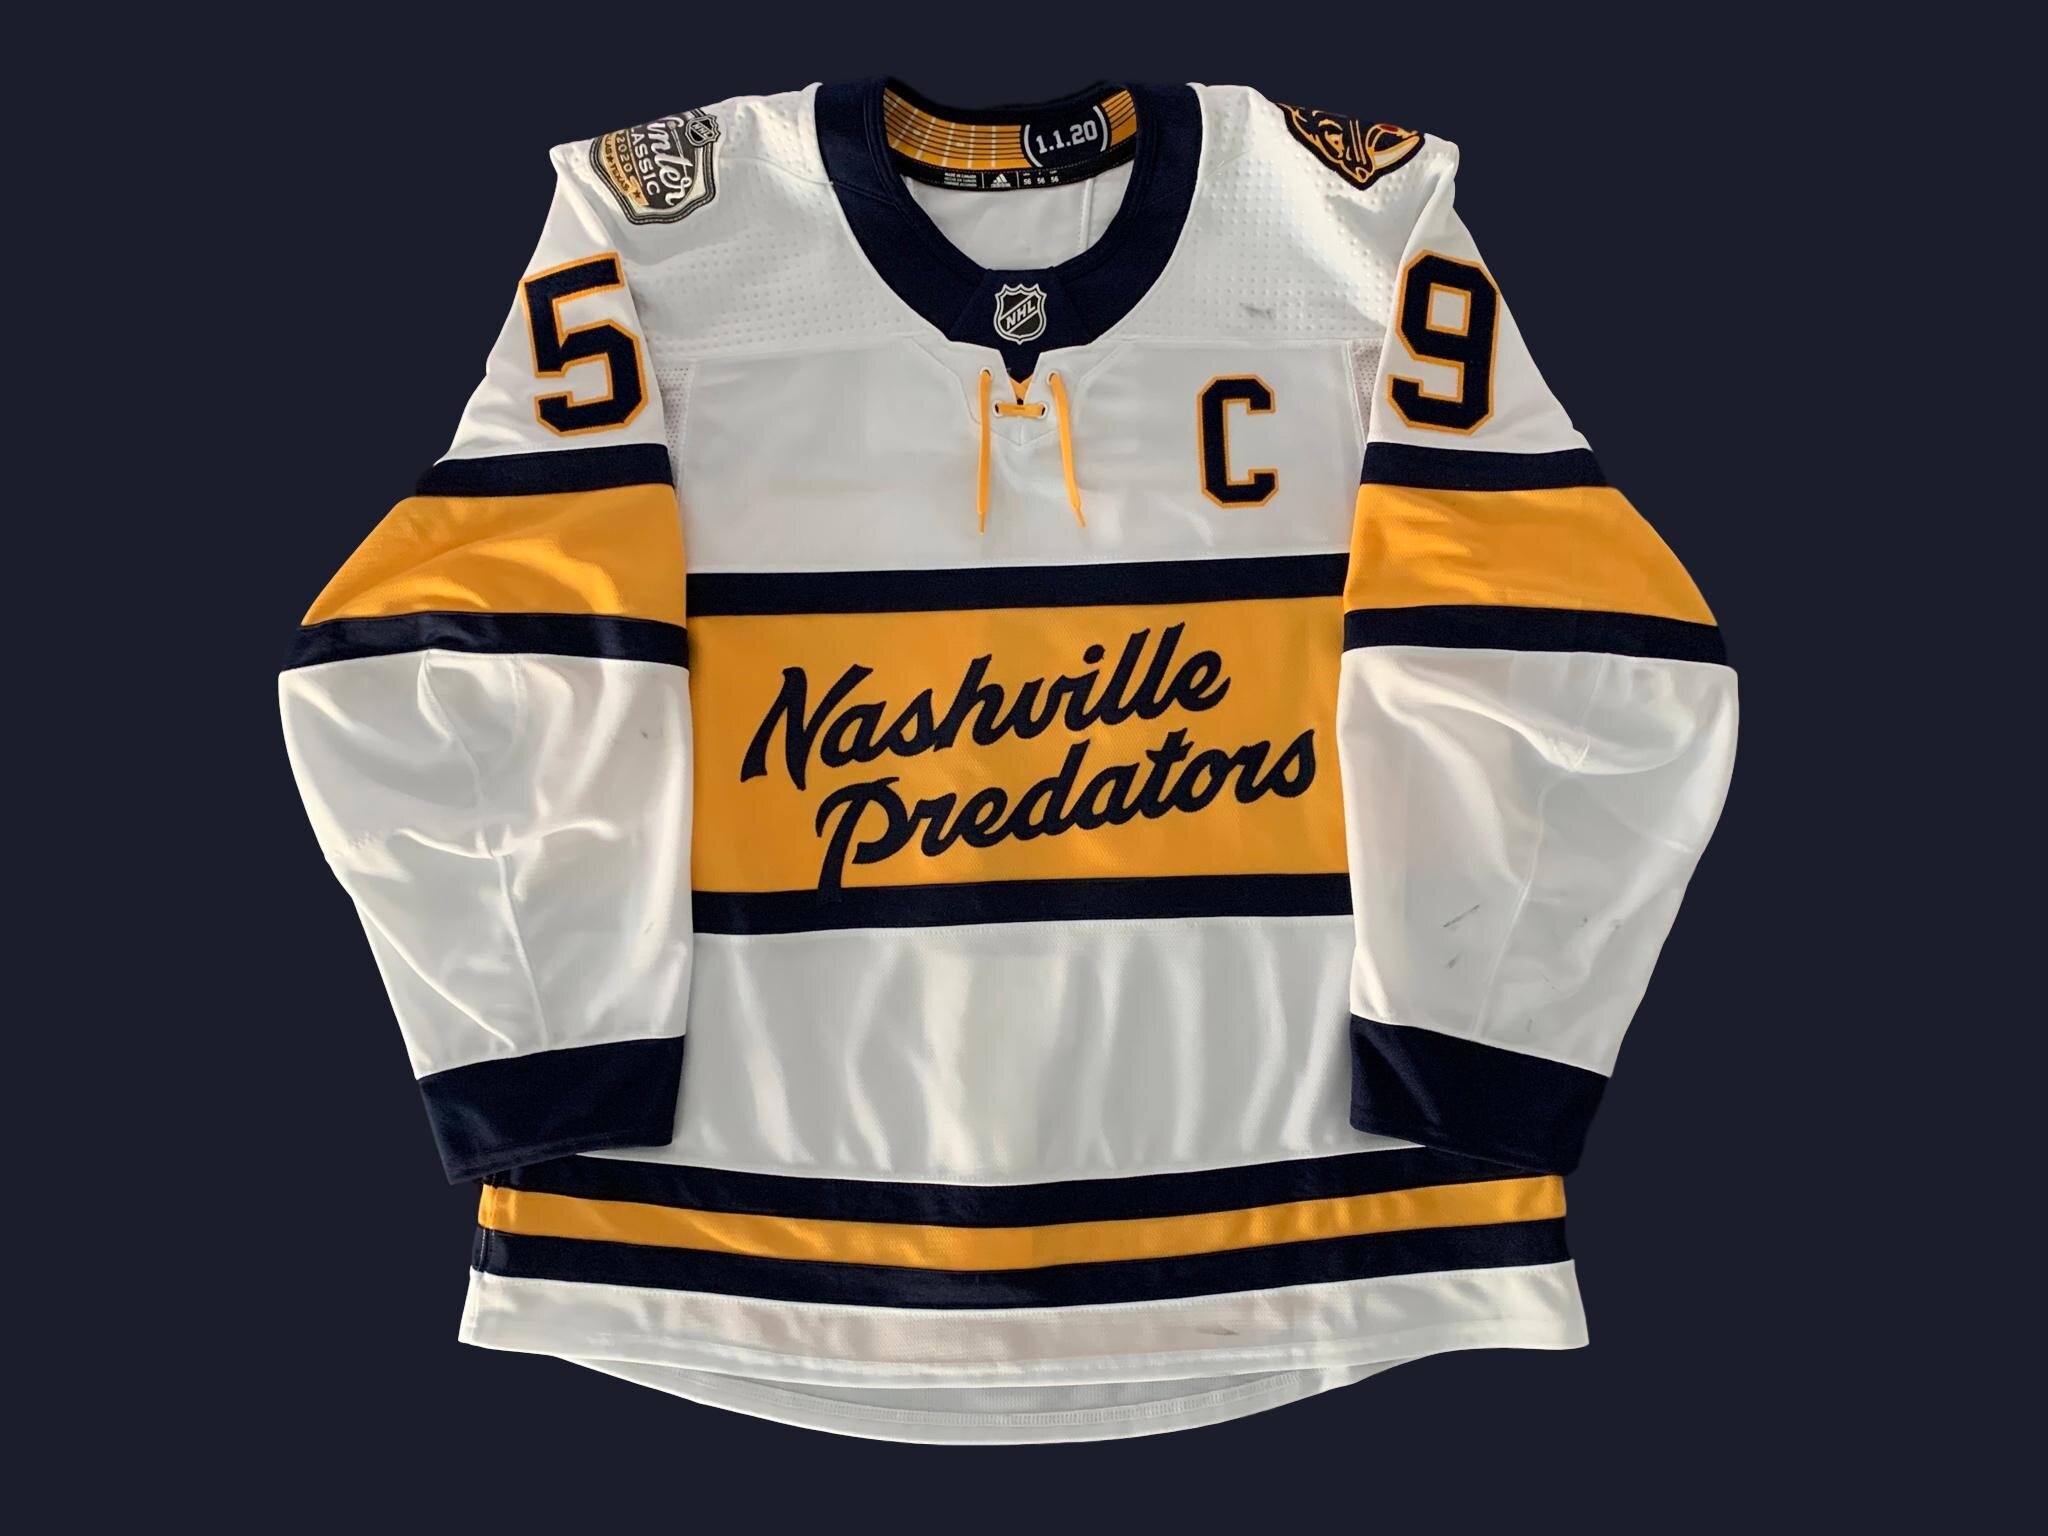 Nashville Predators Winter Classic Concept Uniform by Alec Des Rivières on  Dribbble